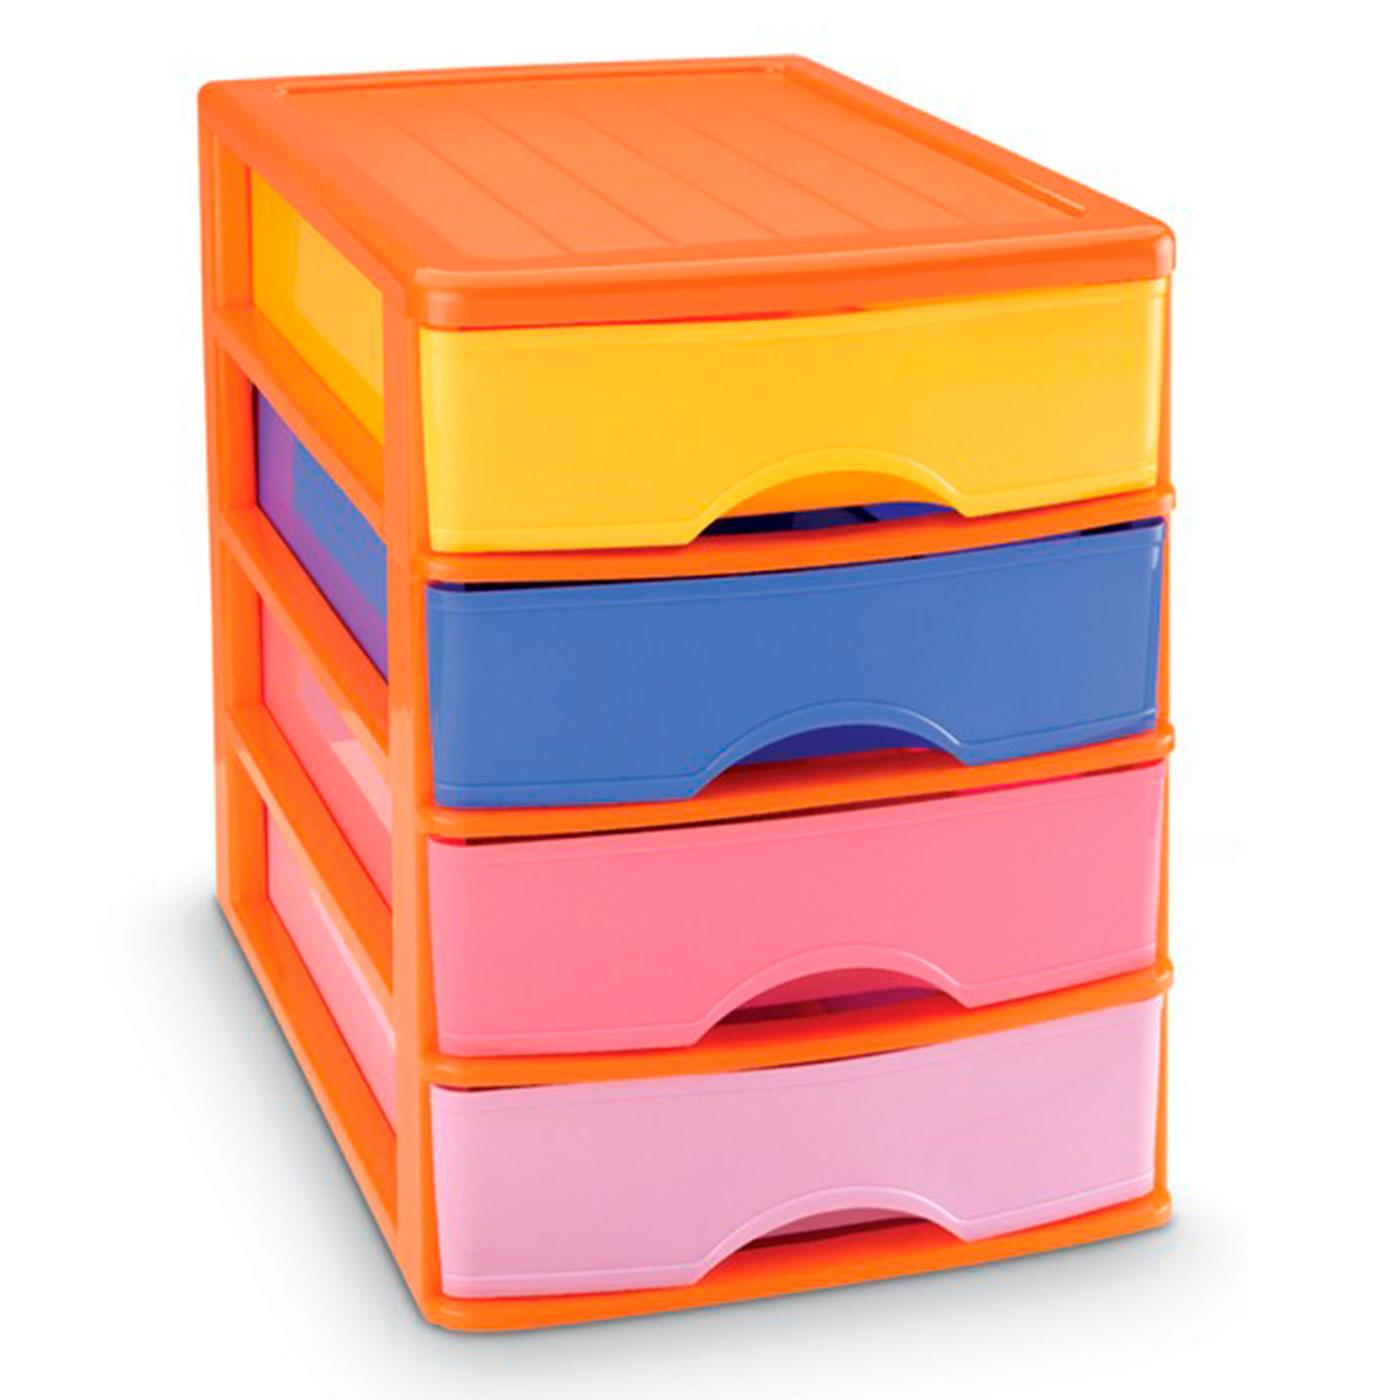 Tradineur - Cajonera Turia de plástico con 3 cajones multicolor, torre  almacenaje, sobremesa, escritorio, baño, oficina (Blanco